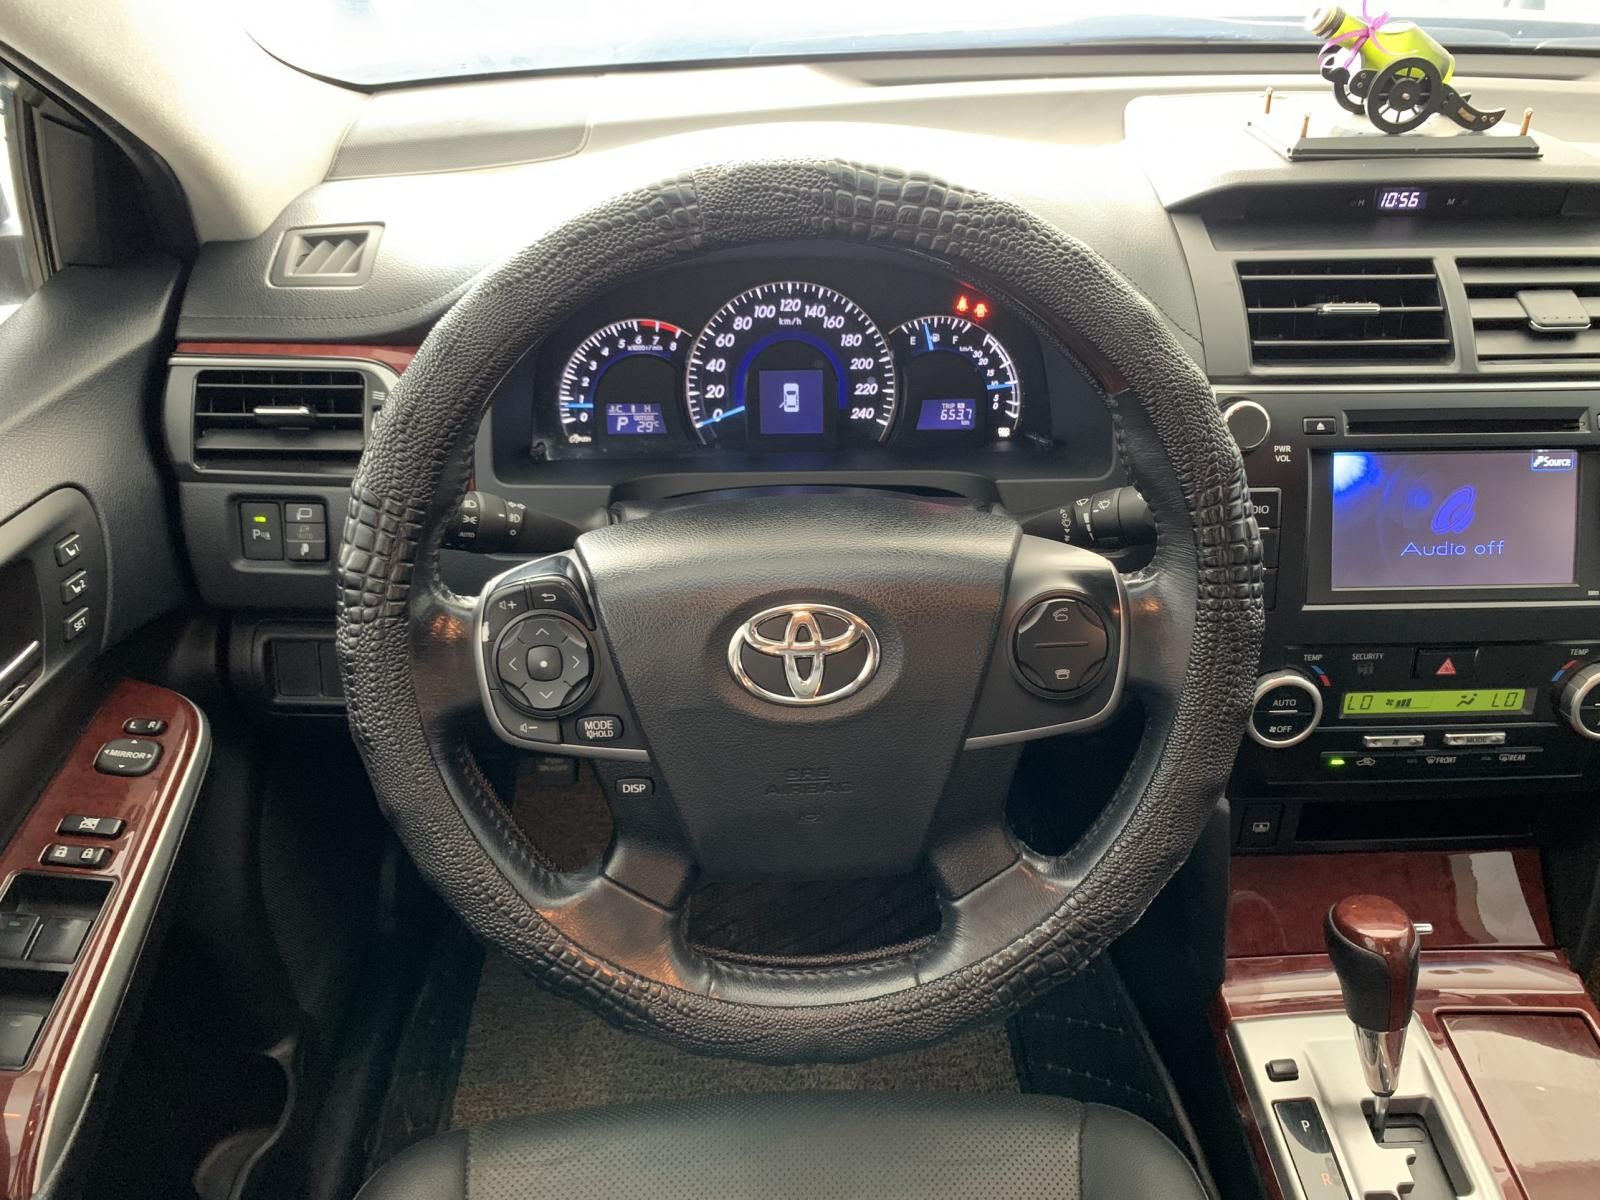 Toyota Camry 2014 - 9 năm đẹp cỡ nào với giá 605tr tại Siêu Thị Ô Tô Hà Nội